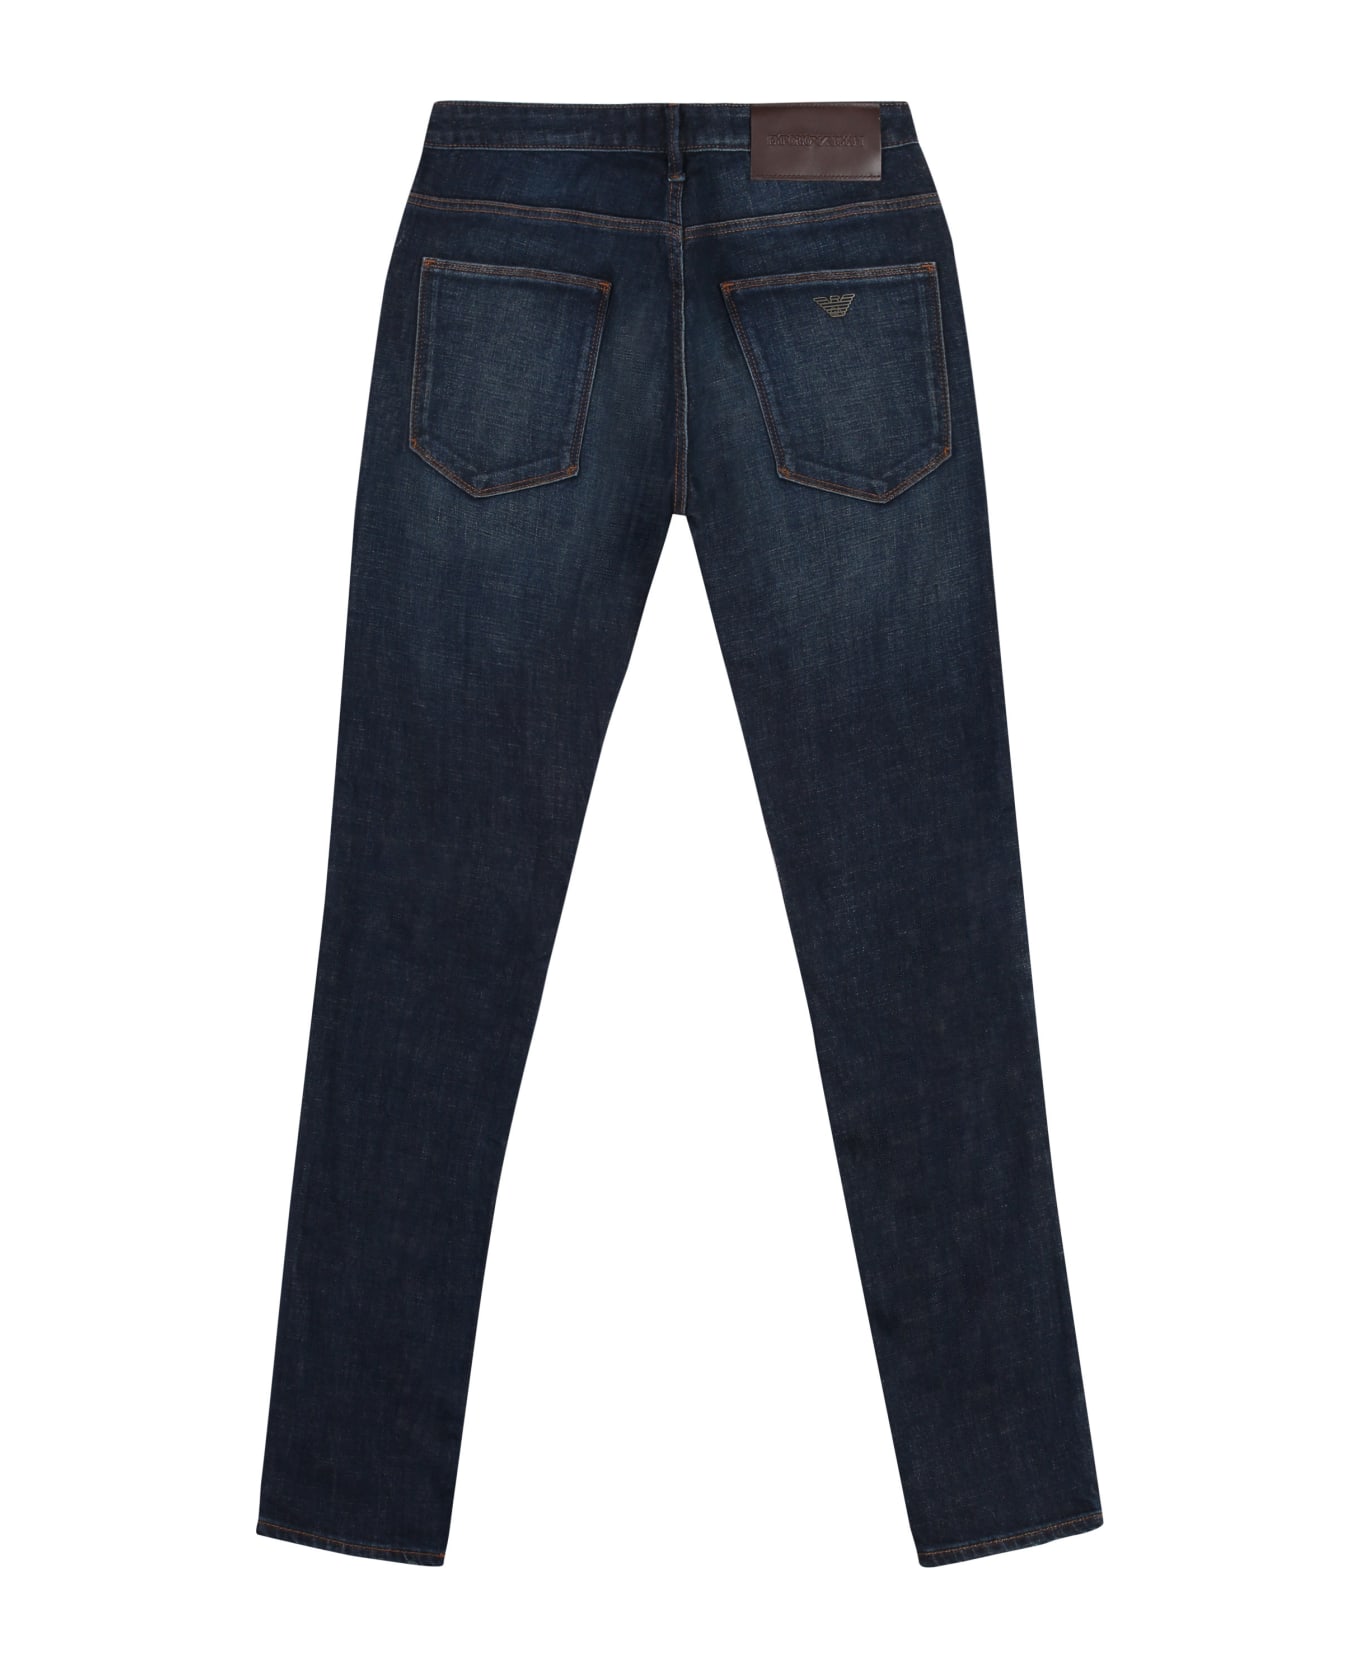 Emporio Armani Slim Fit Jeans - Denim